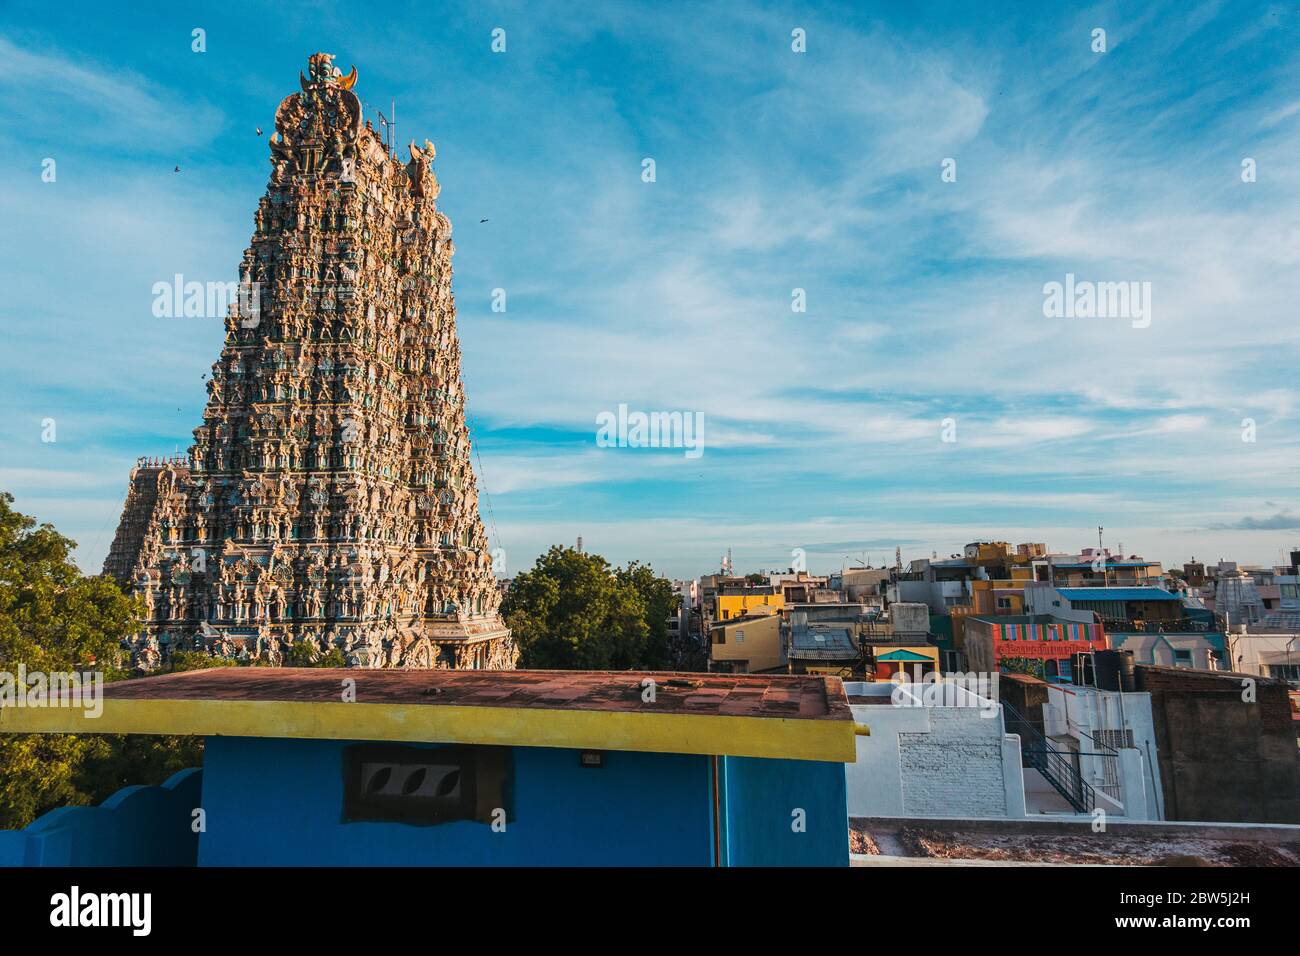 Un temple hindou surplombe tous les autres bâtiments du centre de Madurai, Tamil Nadu, en Inde Banque D'Images